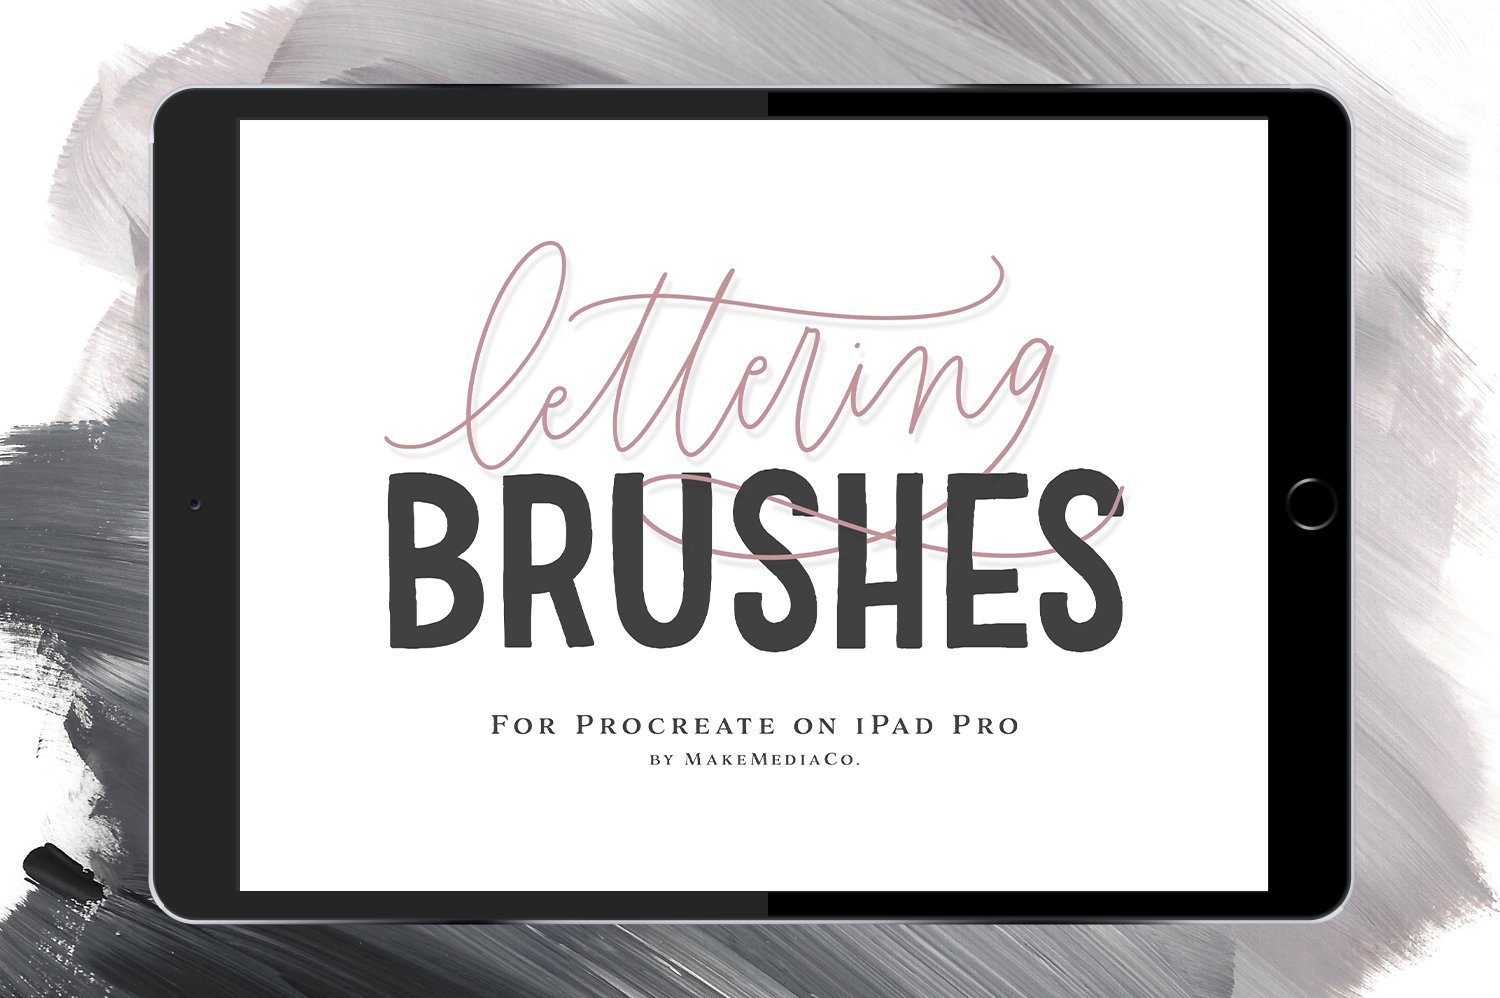 12 iPad Brushes For Procreate